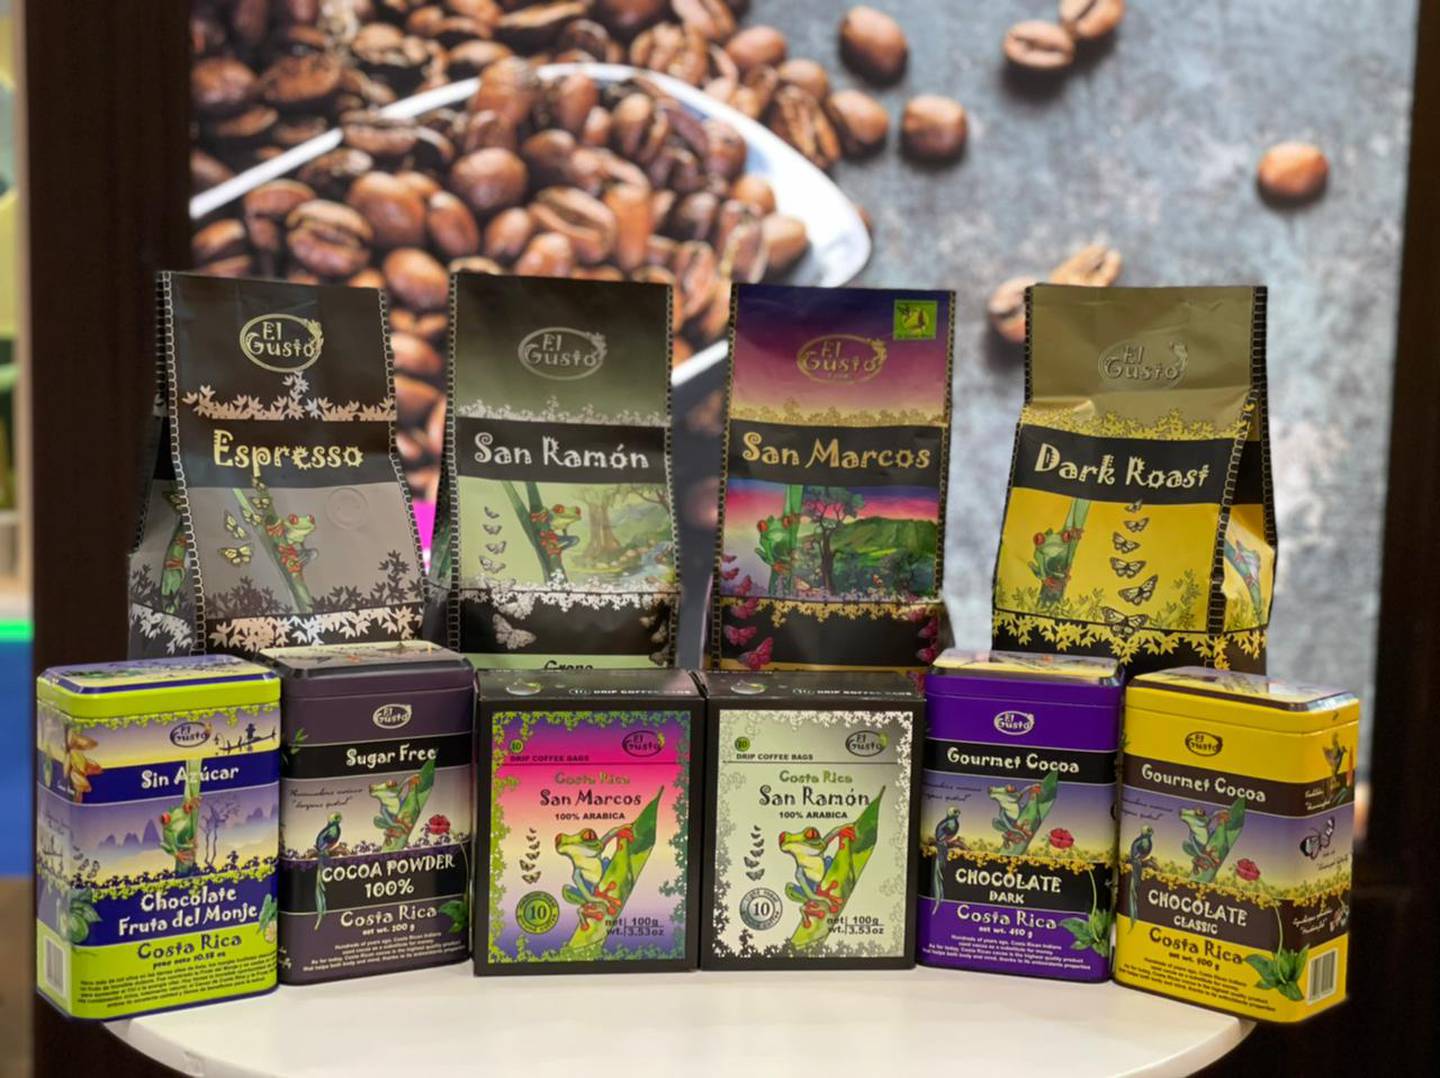 Los empaques del café y del cacao de alta calidad resaltan las bondades de Costa Rica como país verde, como parte de la diferenciación de los productos. Foto: Cortesía